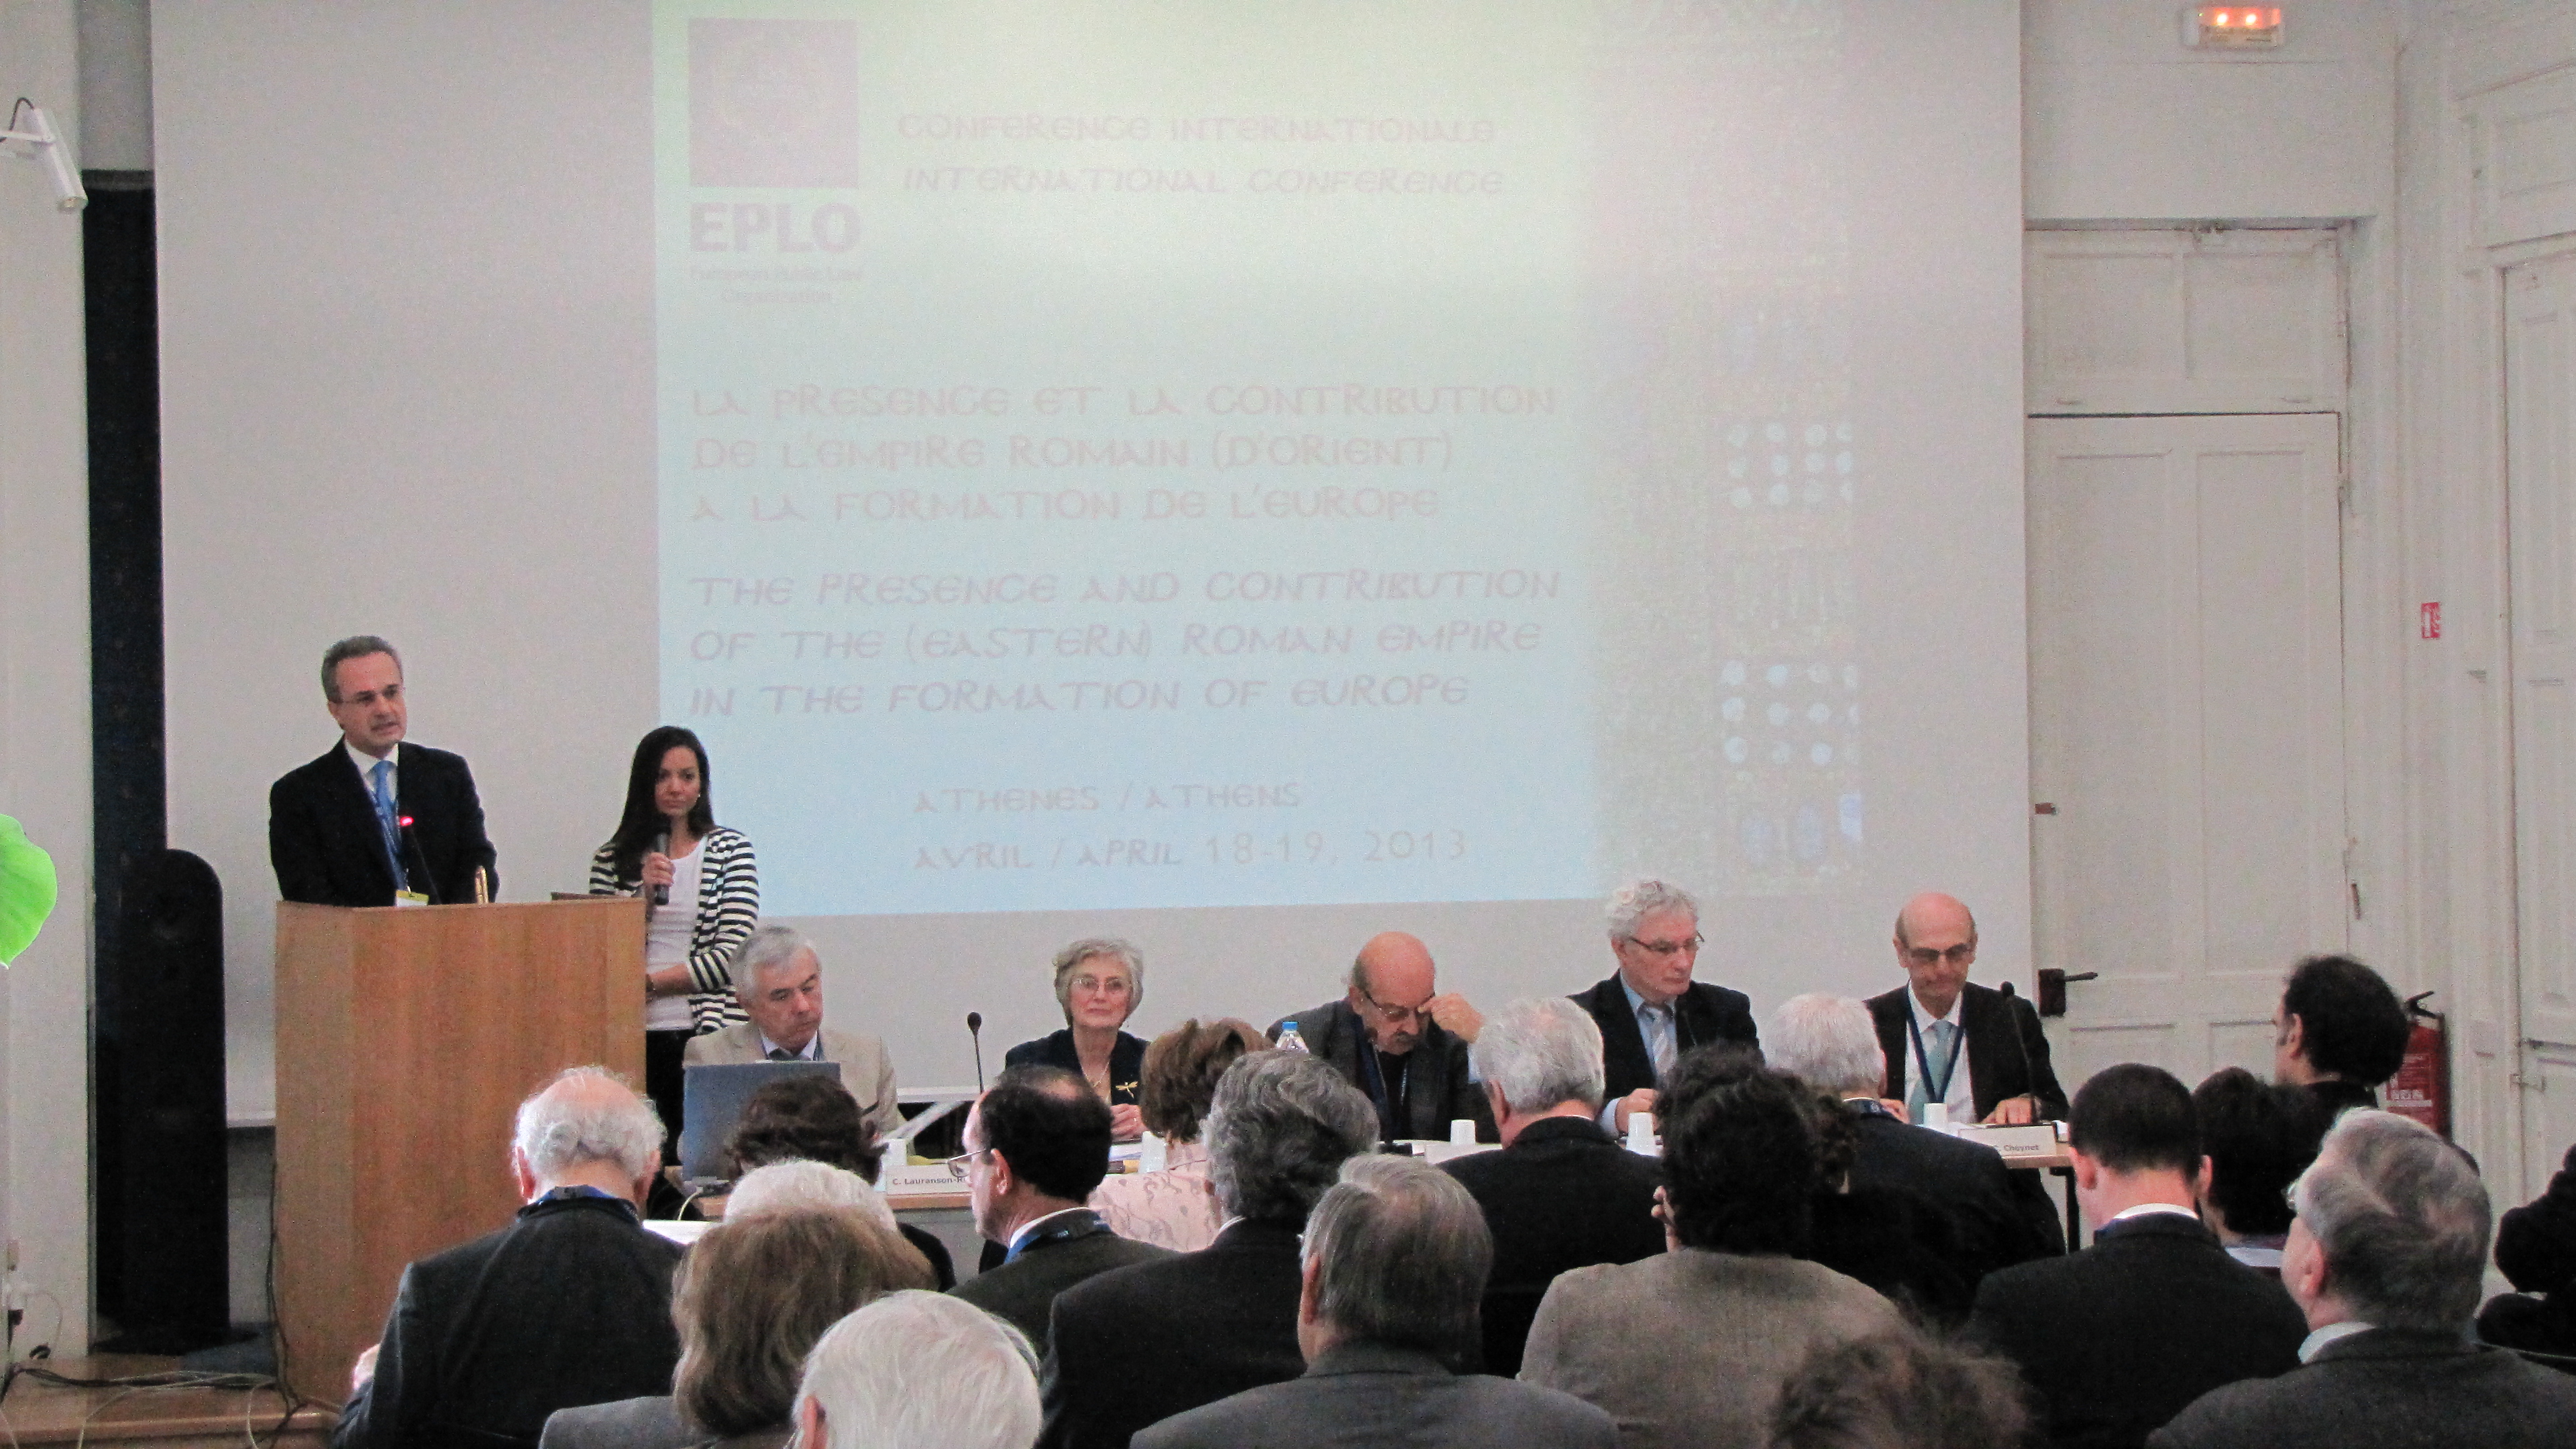 Εκδήλωση από τον EPLO με θέμα: «Η παρουσία και η συμβολή της (Ανατολικής) Ρωμαϊκής Αυτοκρατορίας στη δημιουργία της Ευρώπης» (18-19/4/2013)